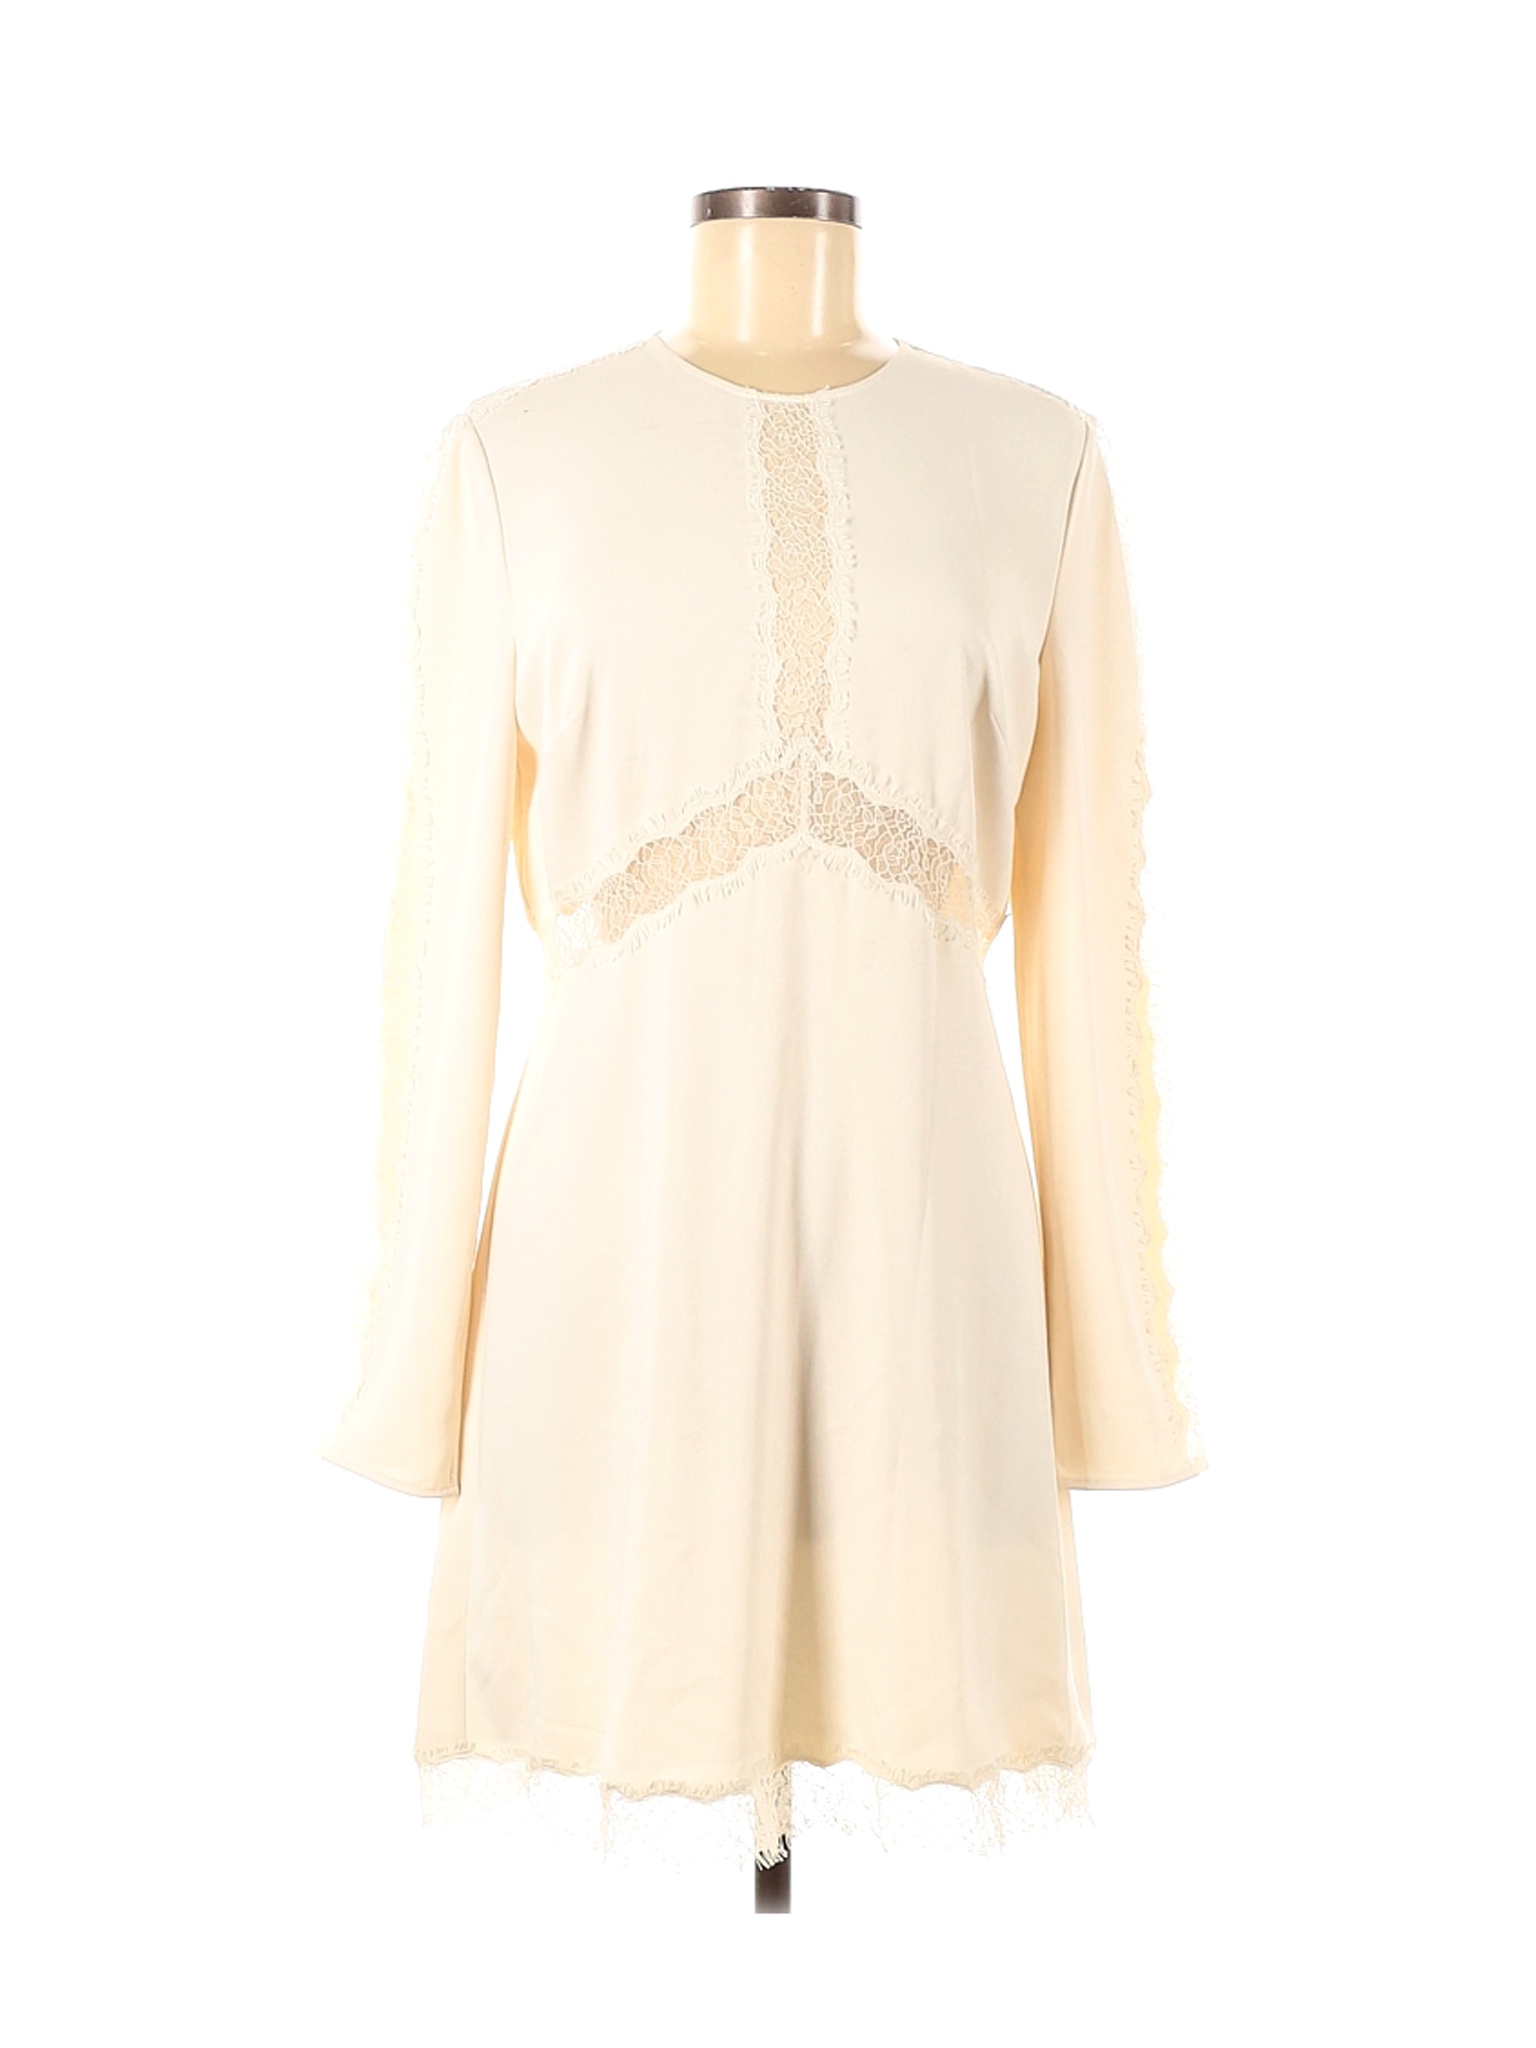 Zimmermann Women Ivory Casual Dress M | eBay